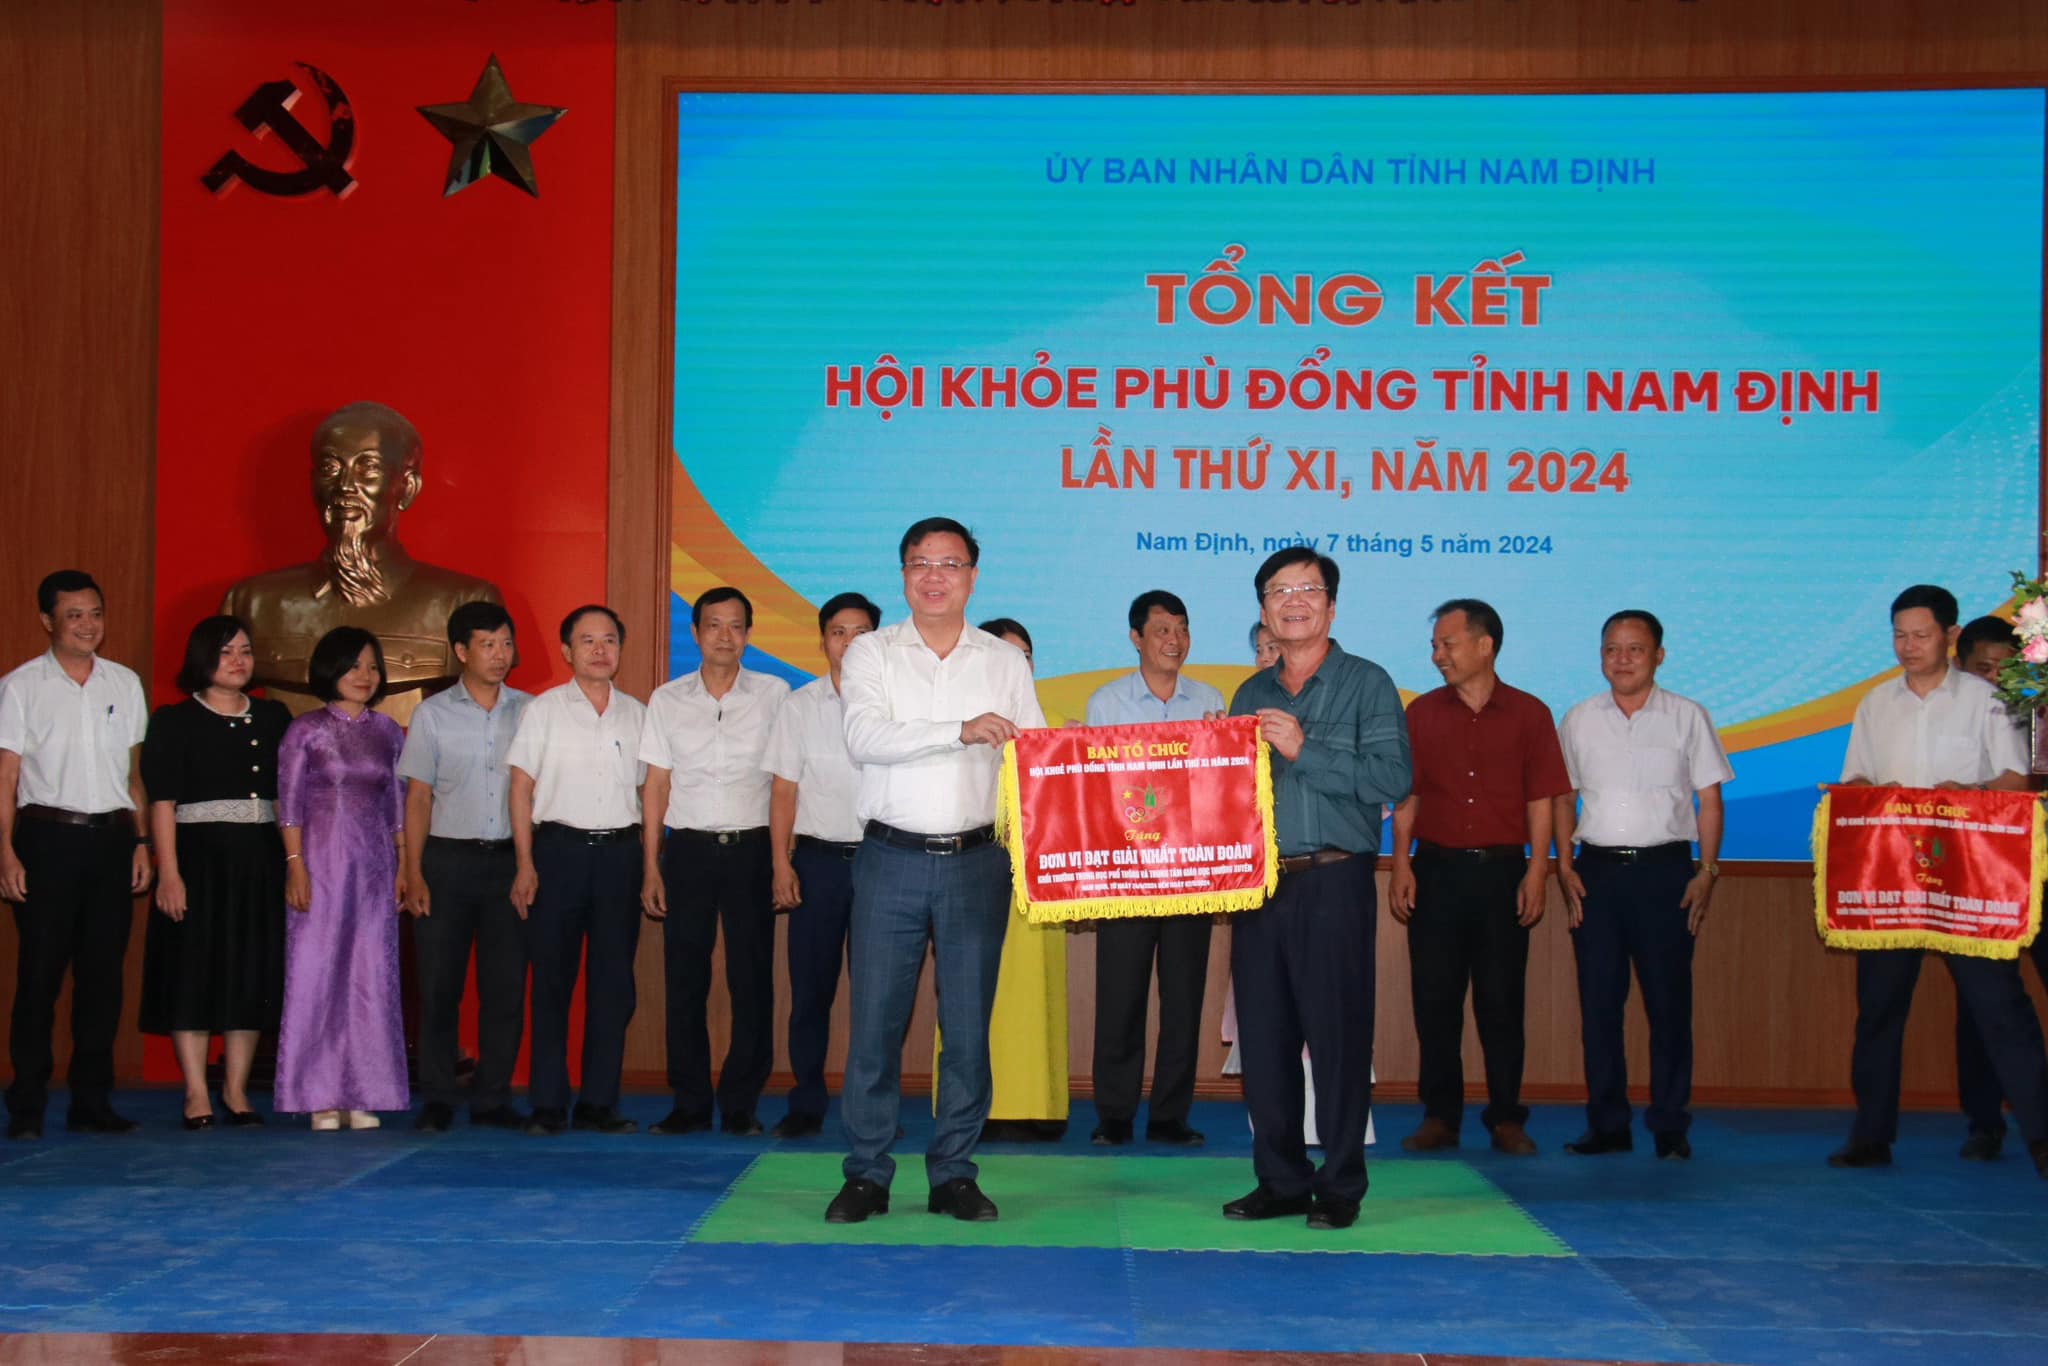 Trường THPT chuyên Lê Hồng Phong đoạt cờ giải Nhất toàn đoàn khối THPT tại Hội khoẻ Phù Đổng tỉnh Nam Định lần thứ XI năm 2024 